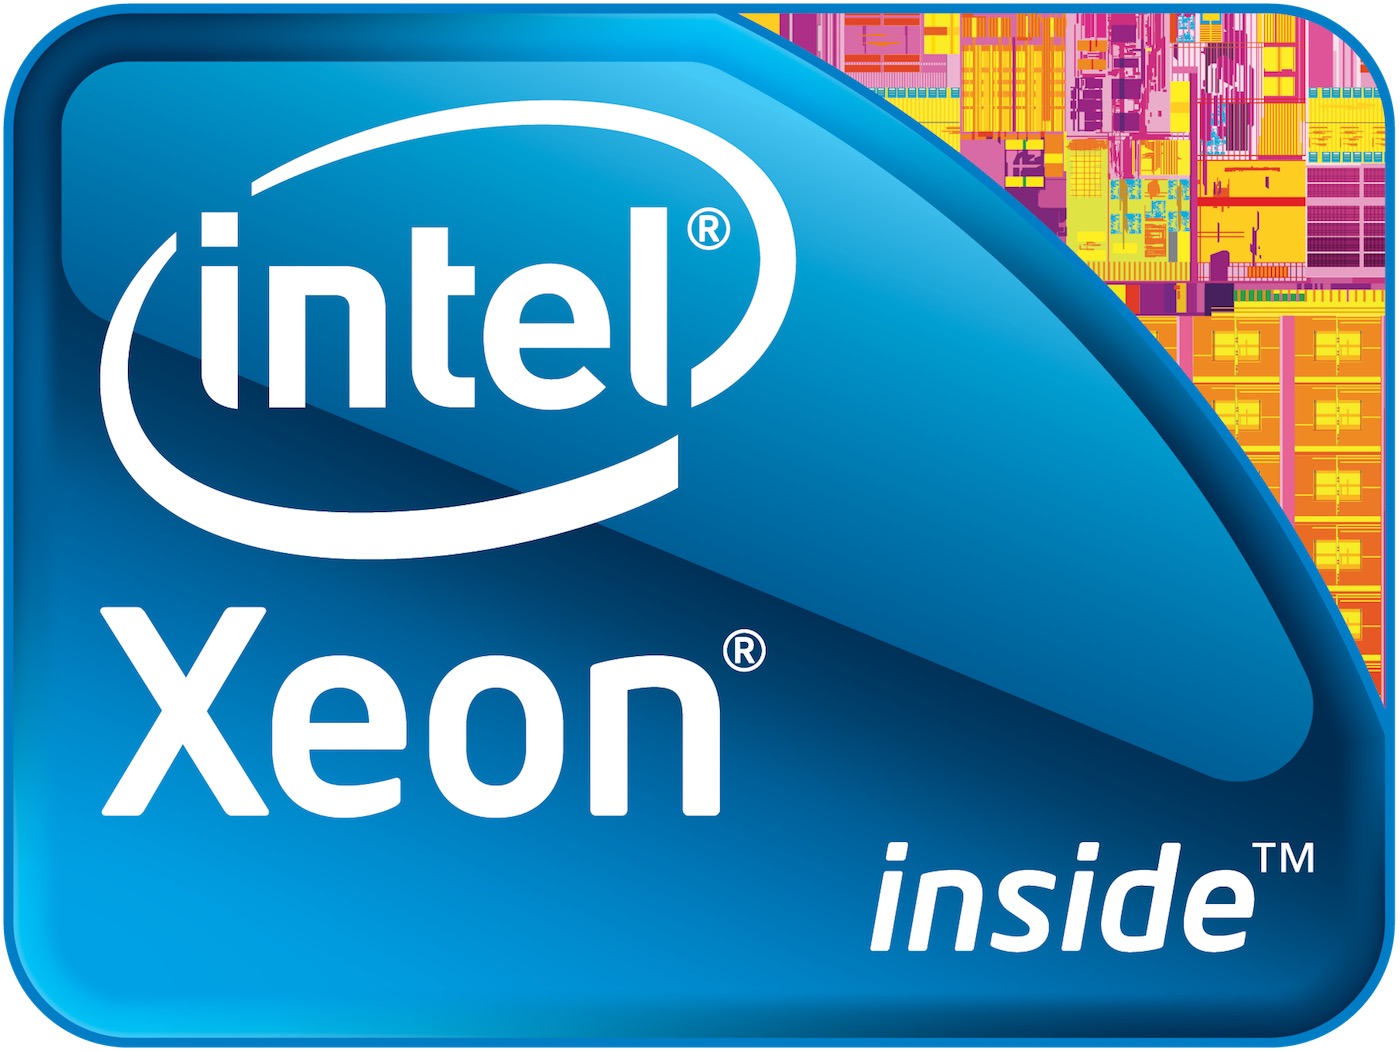 Intel Xeon Inside.